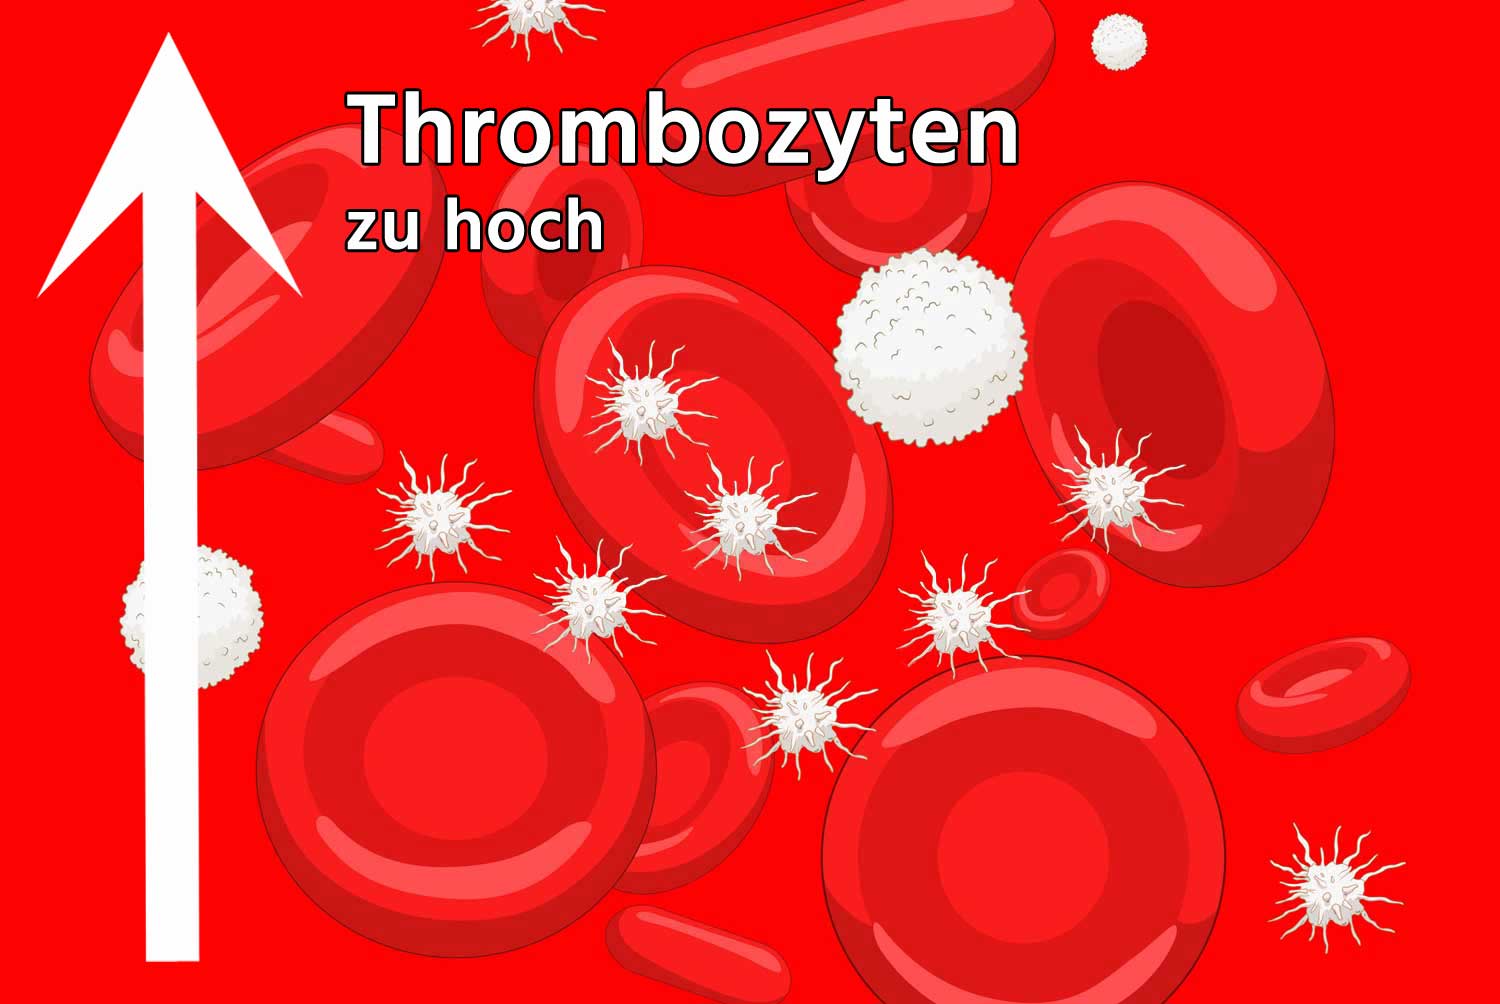 Thrombozyten zu hoch